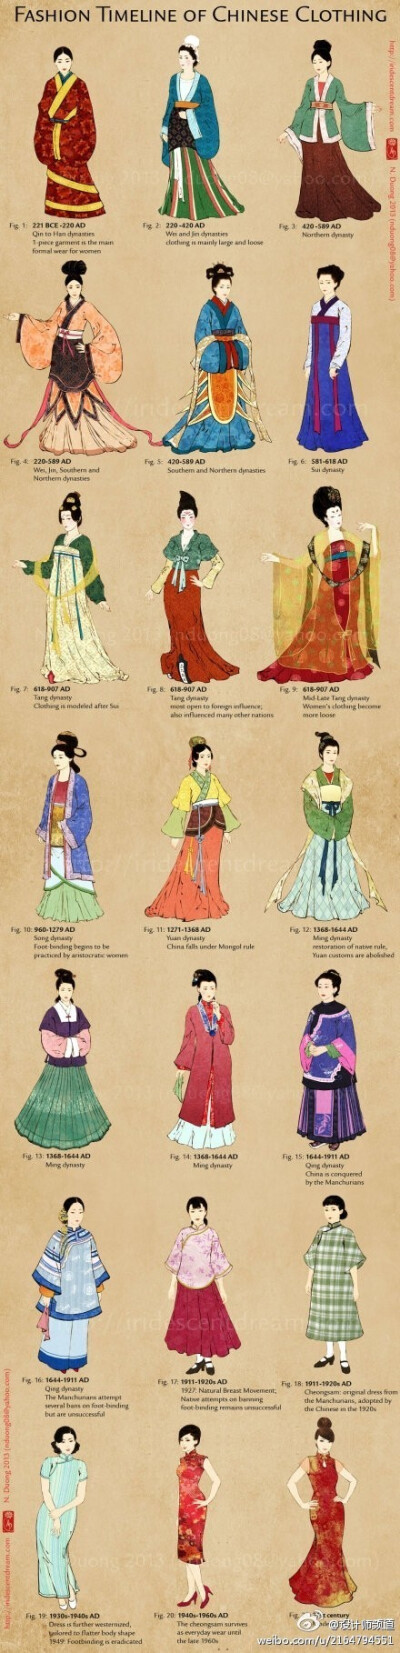 一张图看遍中国历代女子服饰演变史。你最喜欢哪个朝代的？ （转）